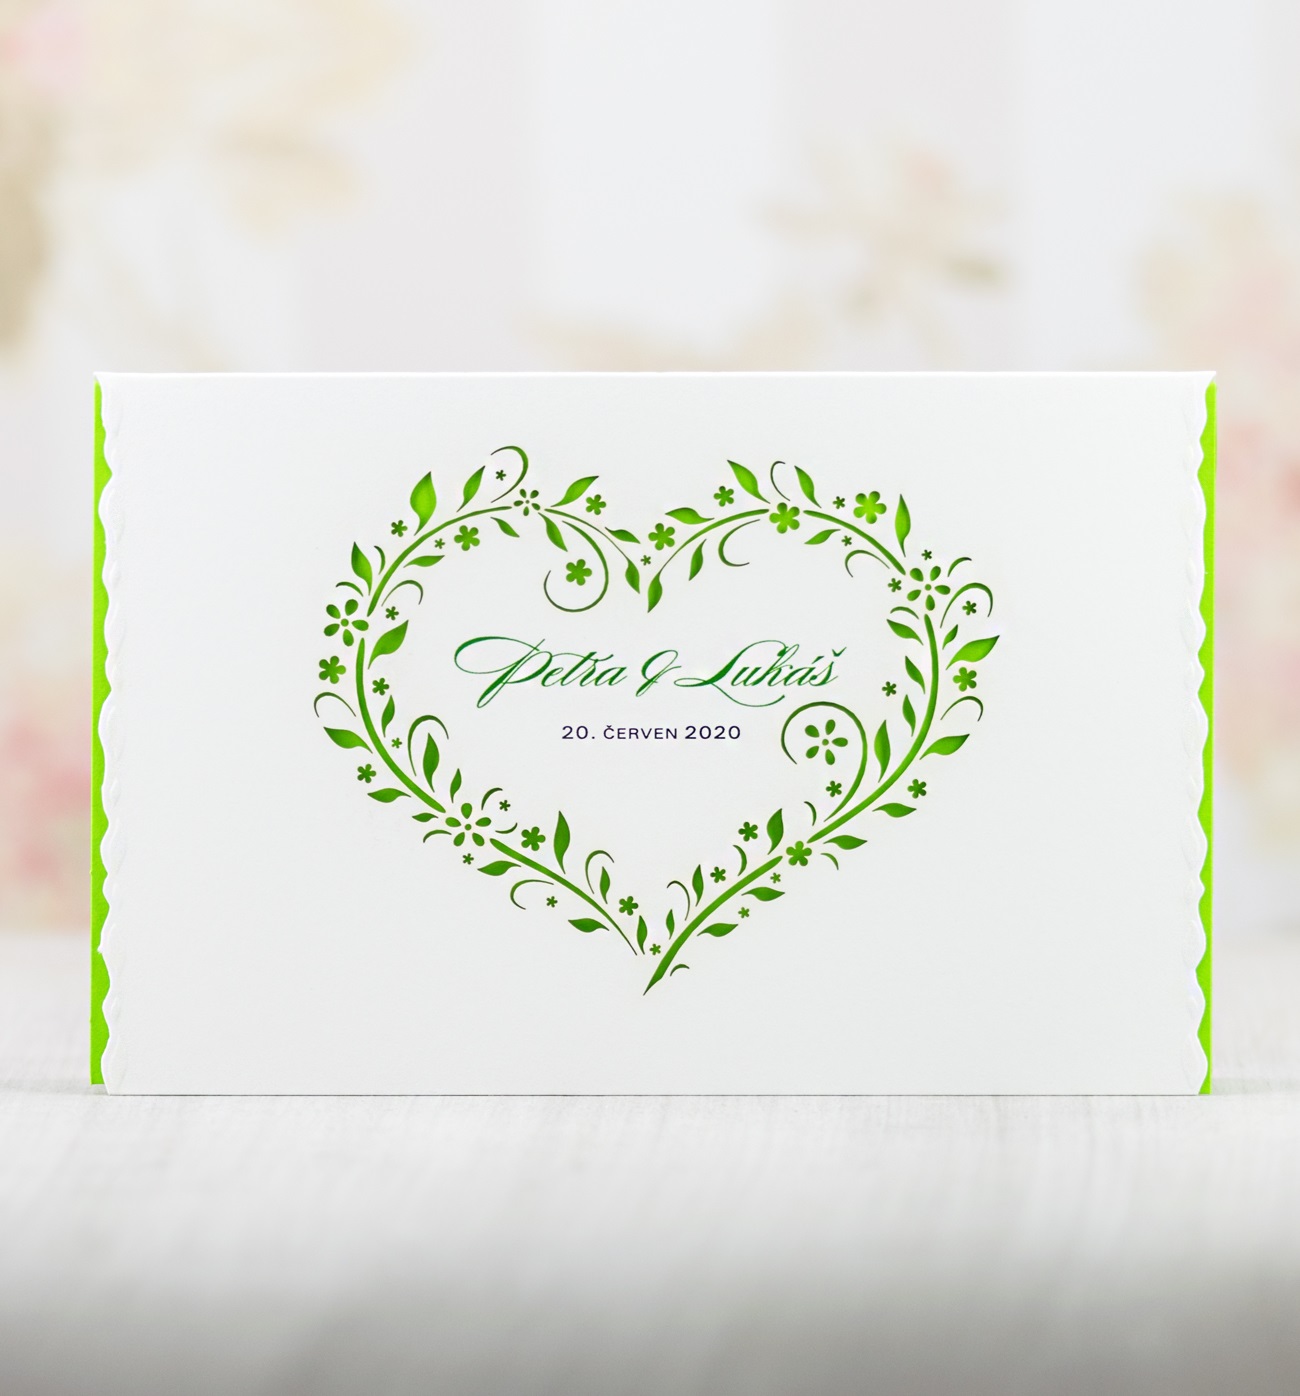 Svatební oznámení – otevírací, s laserovanými florálním motivem ve tvaru srdce na titulní straně